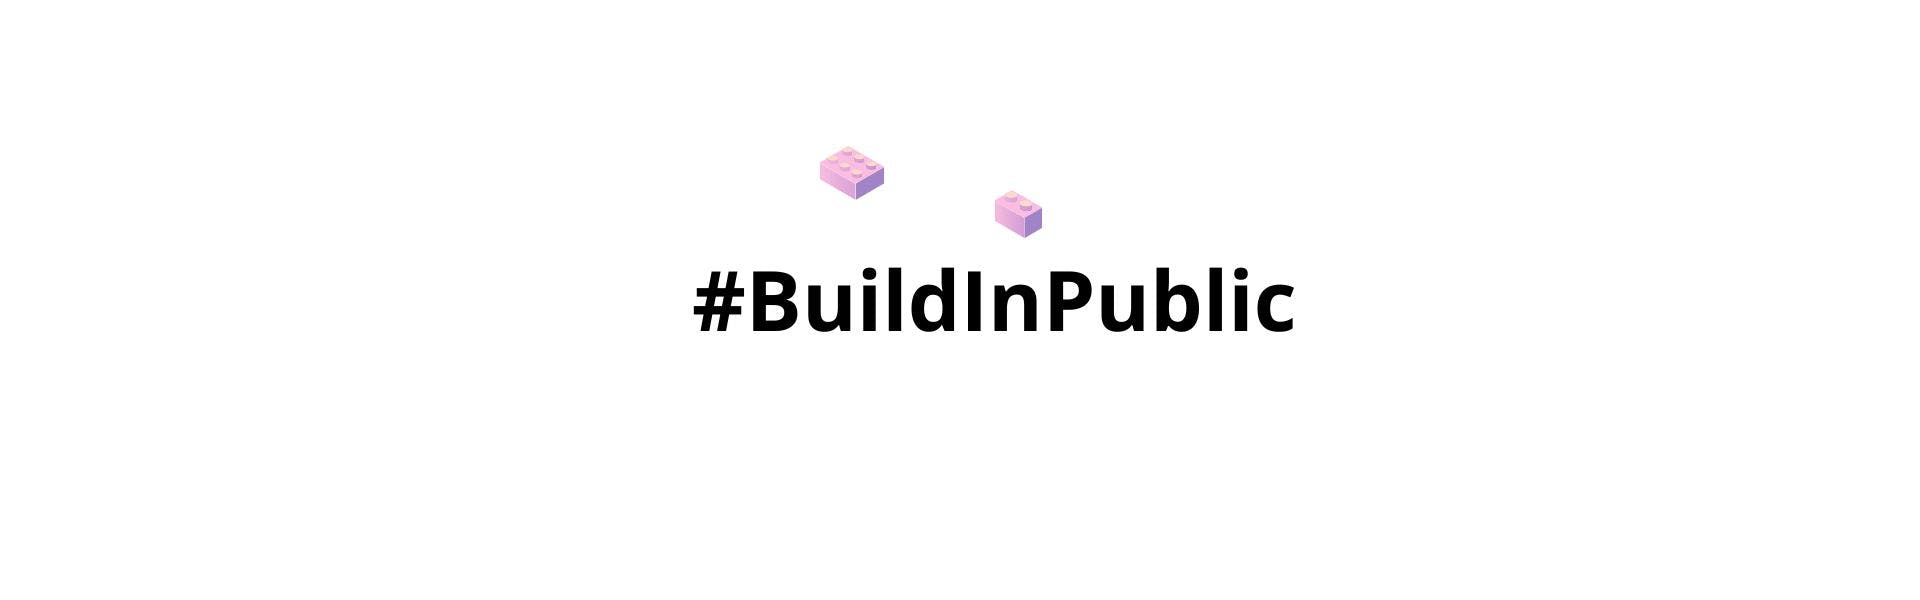 Las 10 Razones para 'Construir en Público' Hoy